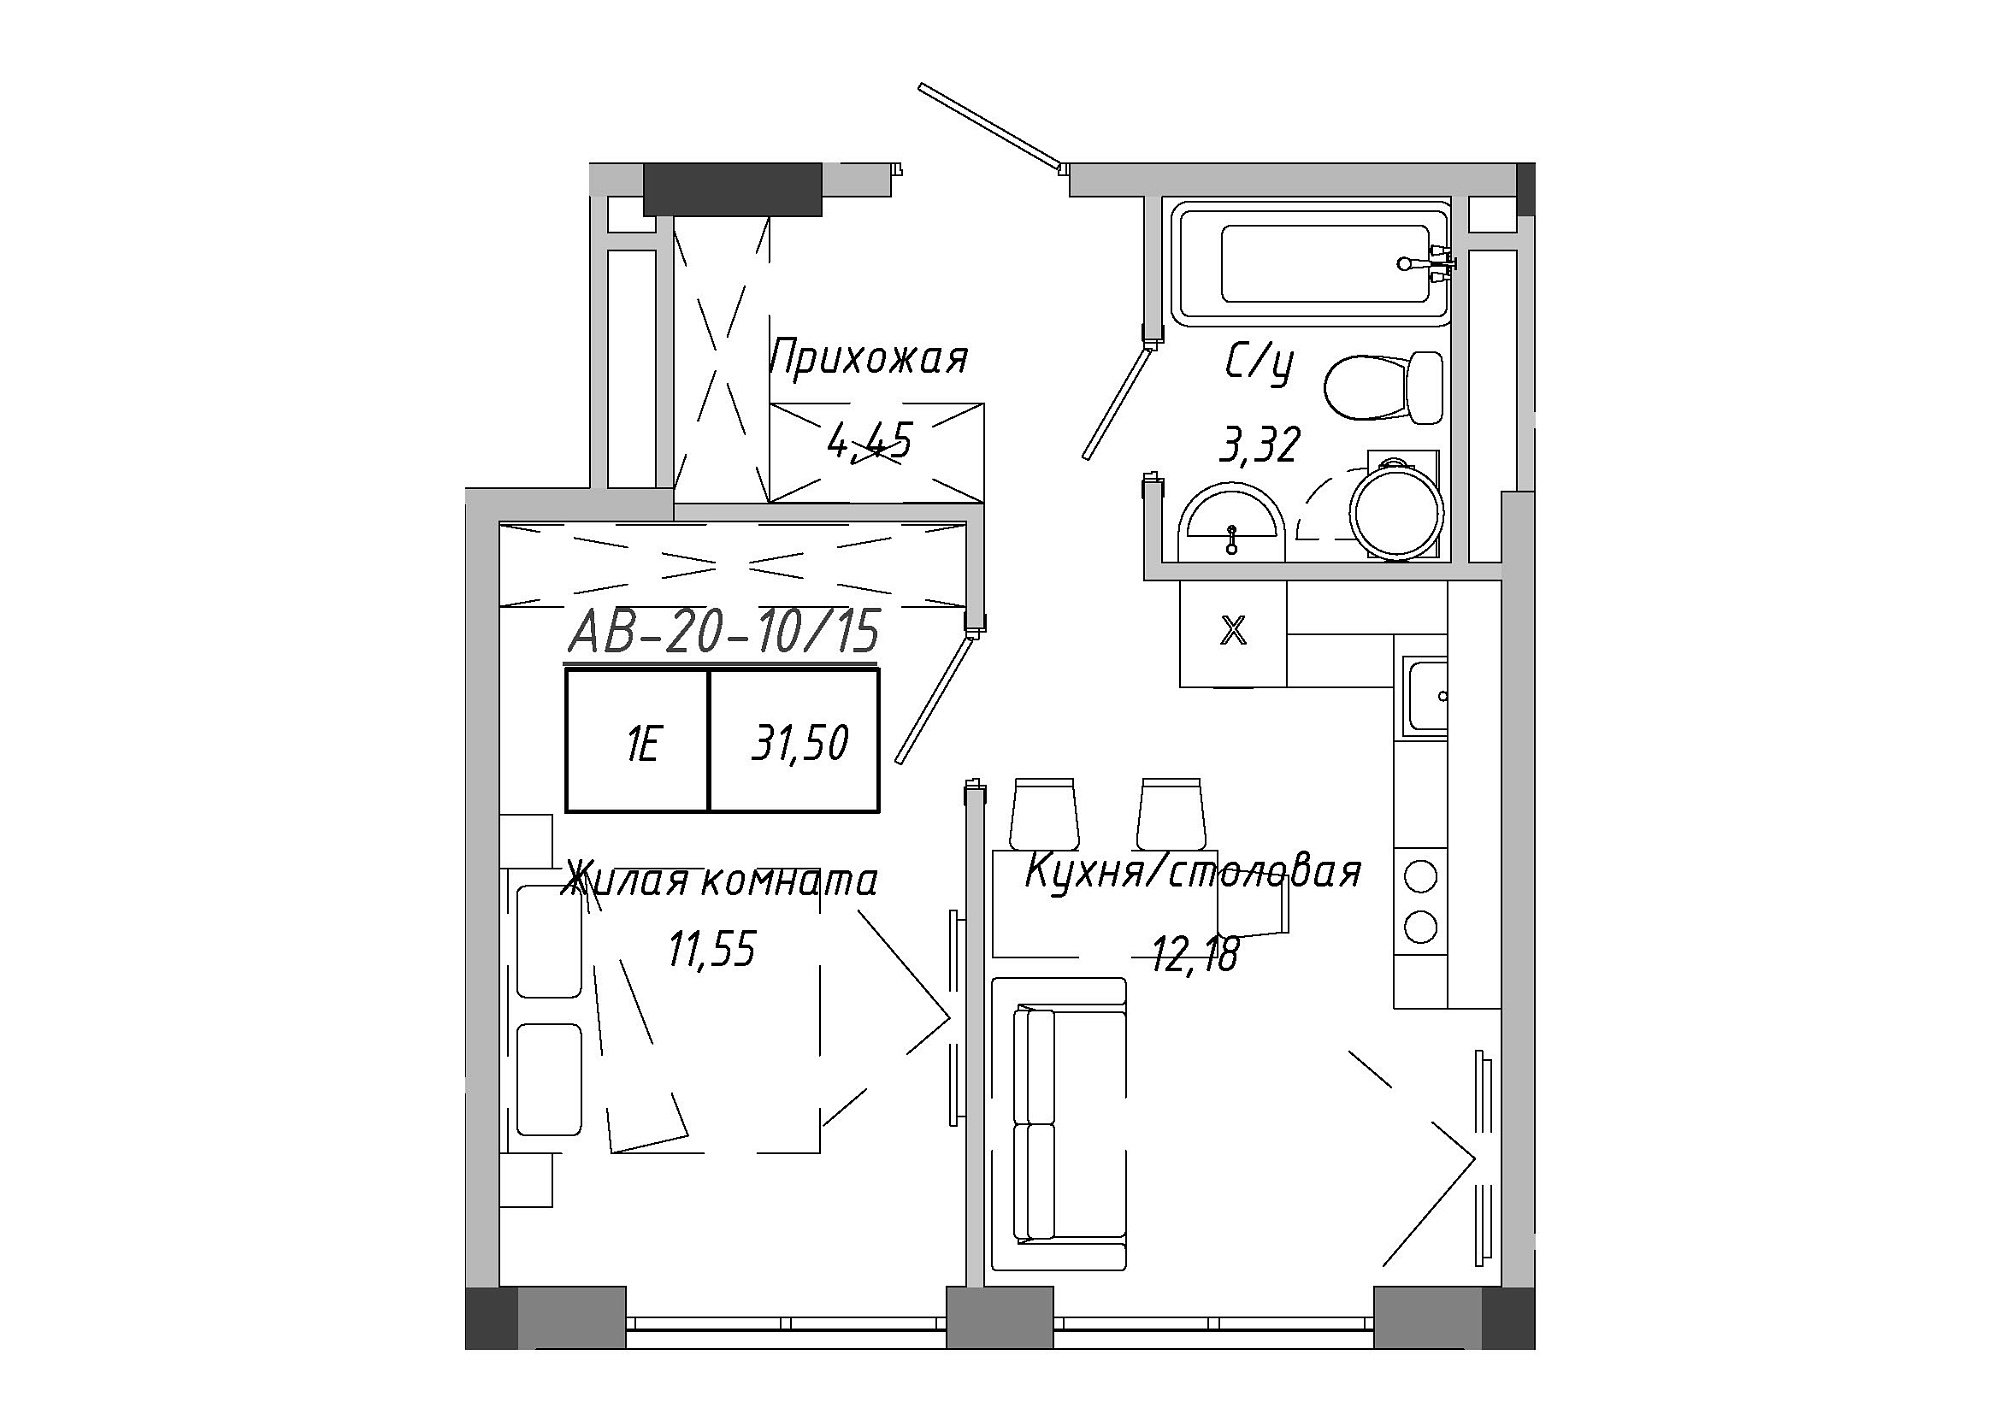 Планировка 1-к квартира площей 31.51м2, AB-20-10/00015.